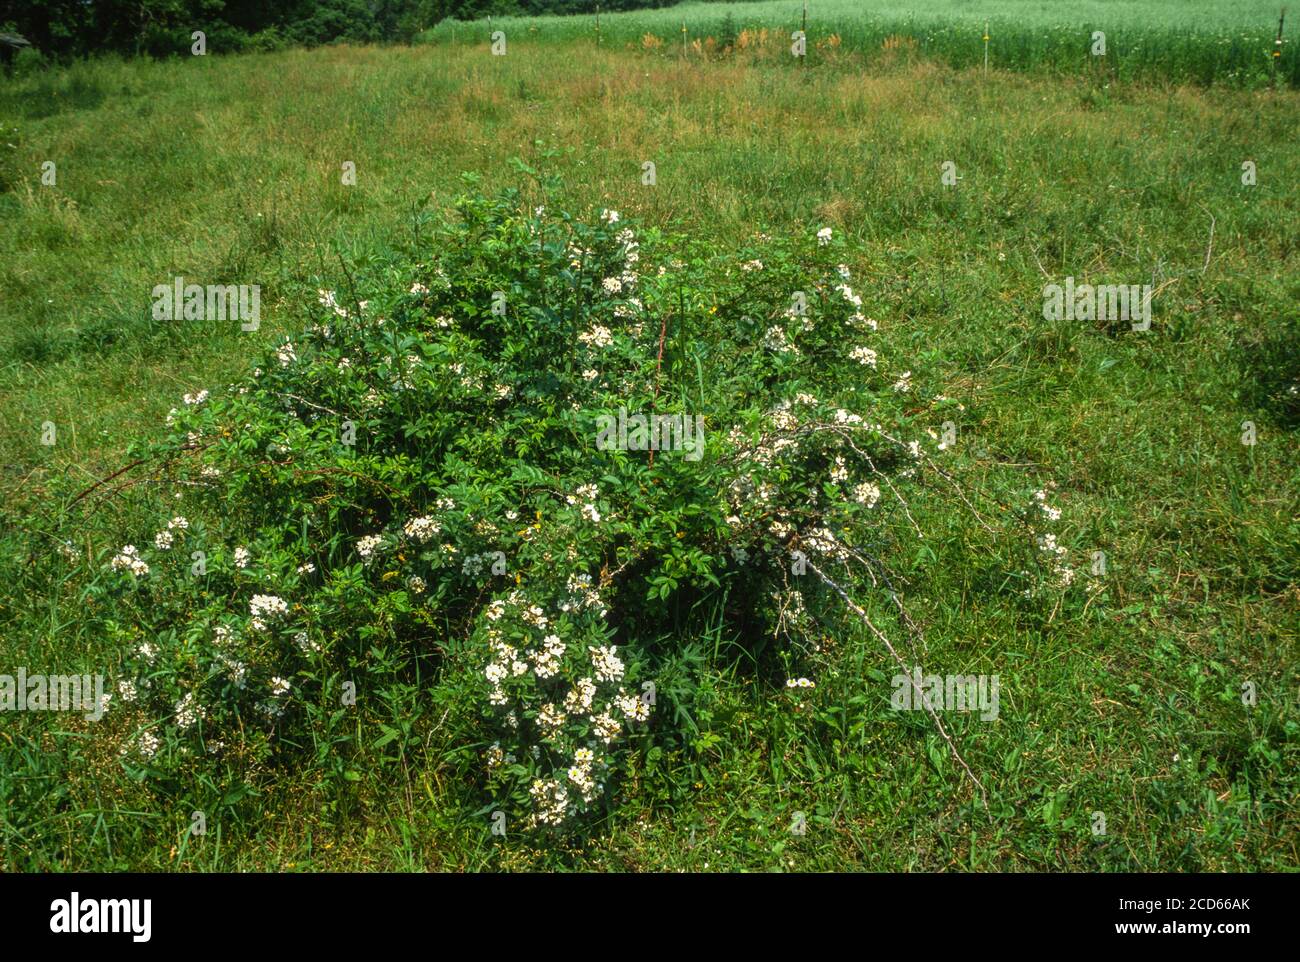 Especies invasoras: La rosa de la multiflora invade en los pastos, Dyersville, Iowa, EE.UU. Foto de stock